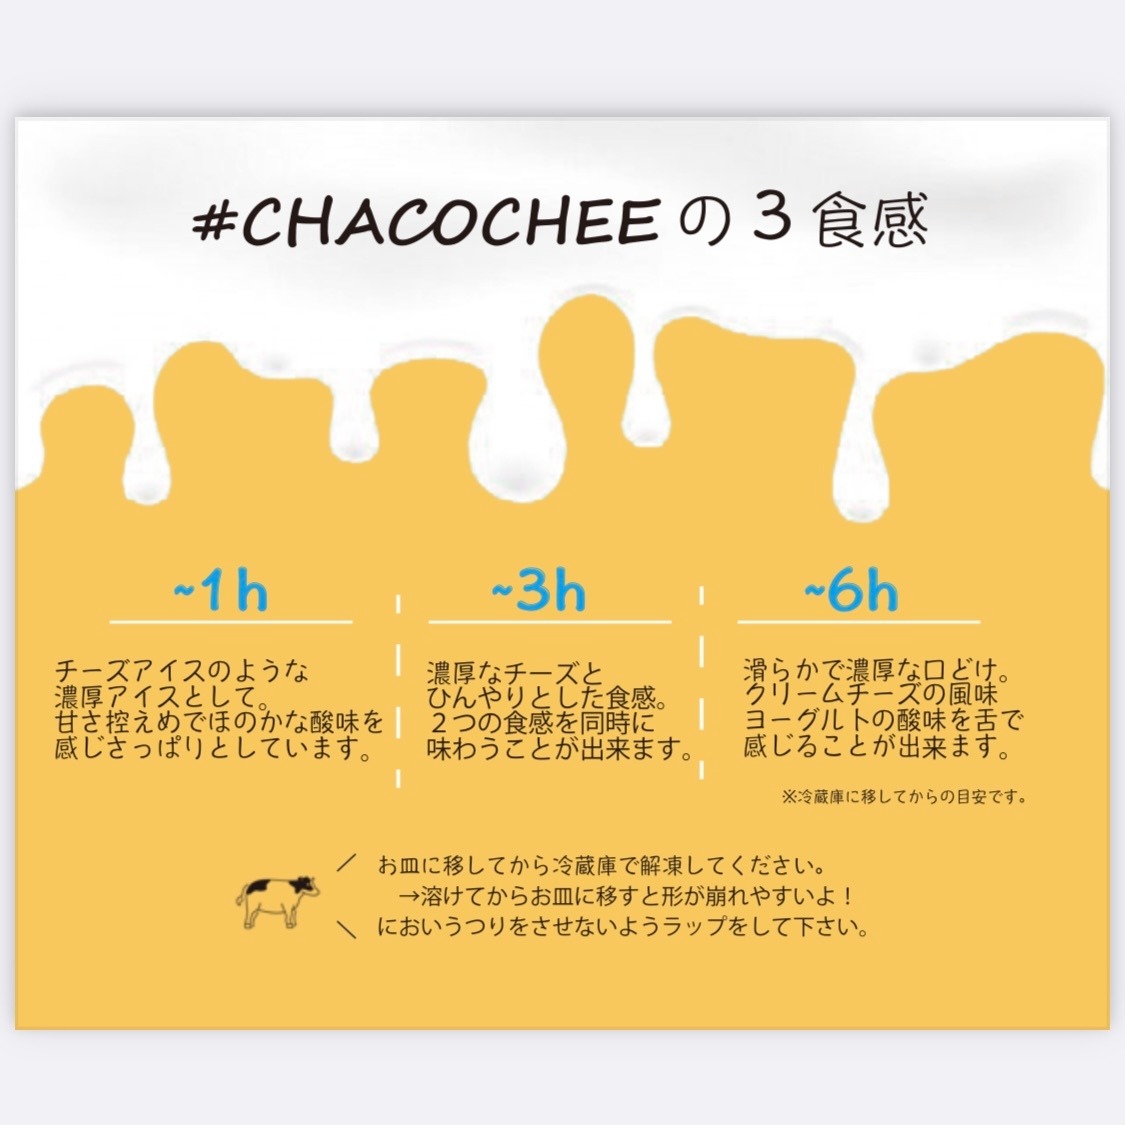 【定期便】ホワイトチョコ レアチーズケーキ 2ホール(直径15cm) × 2ヵ月【全2回】 #CHACOCHEE